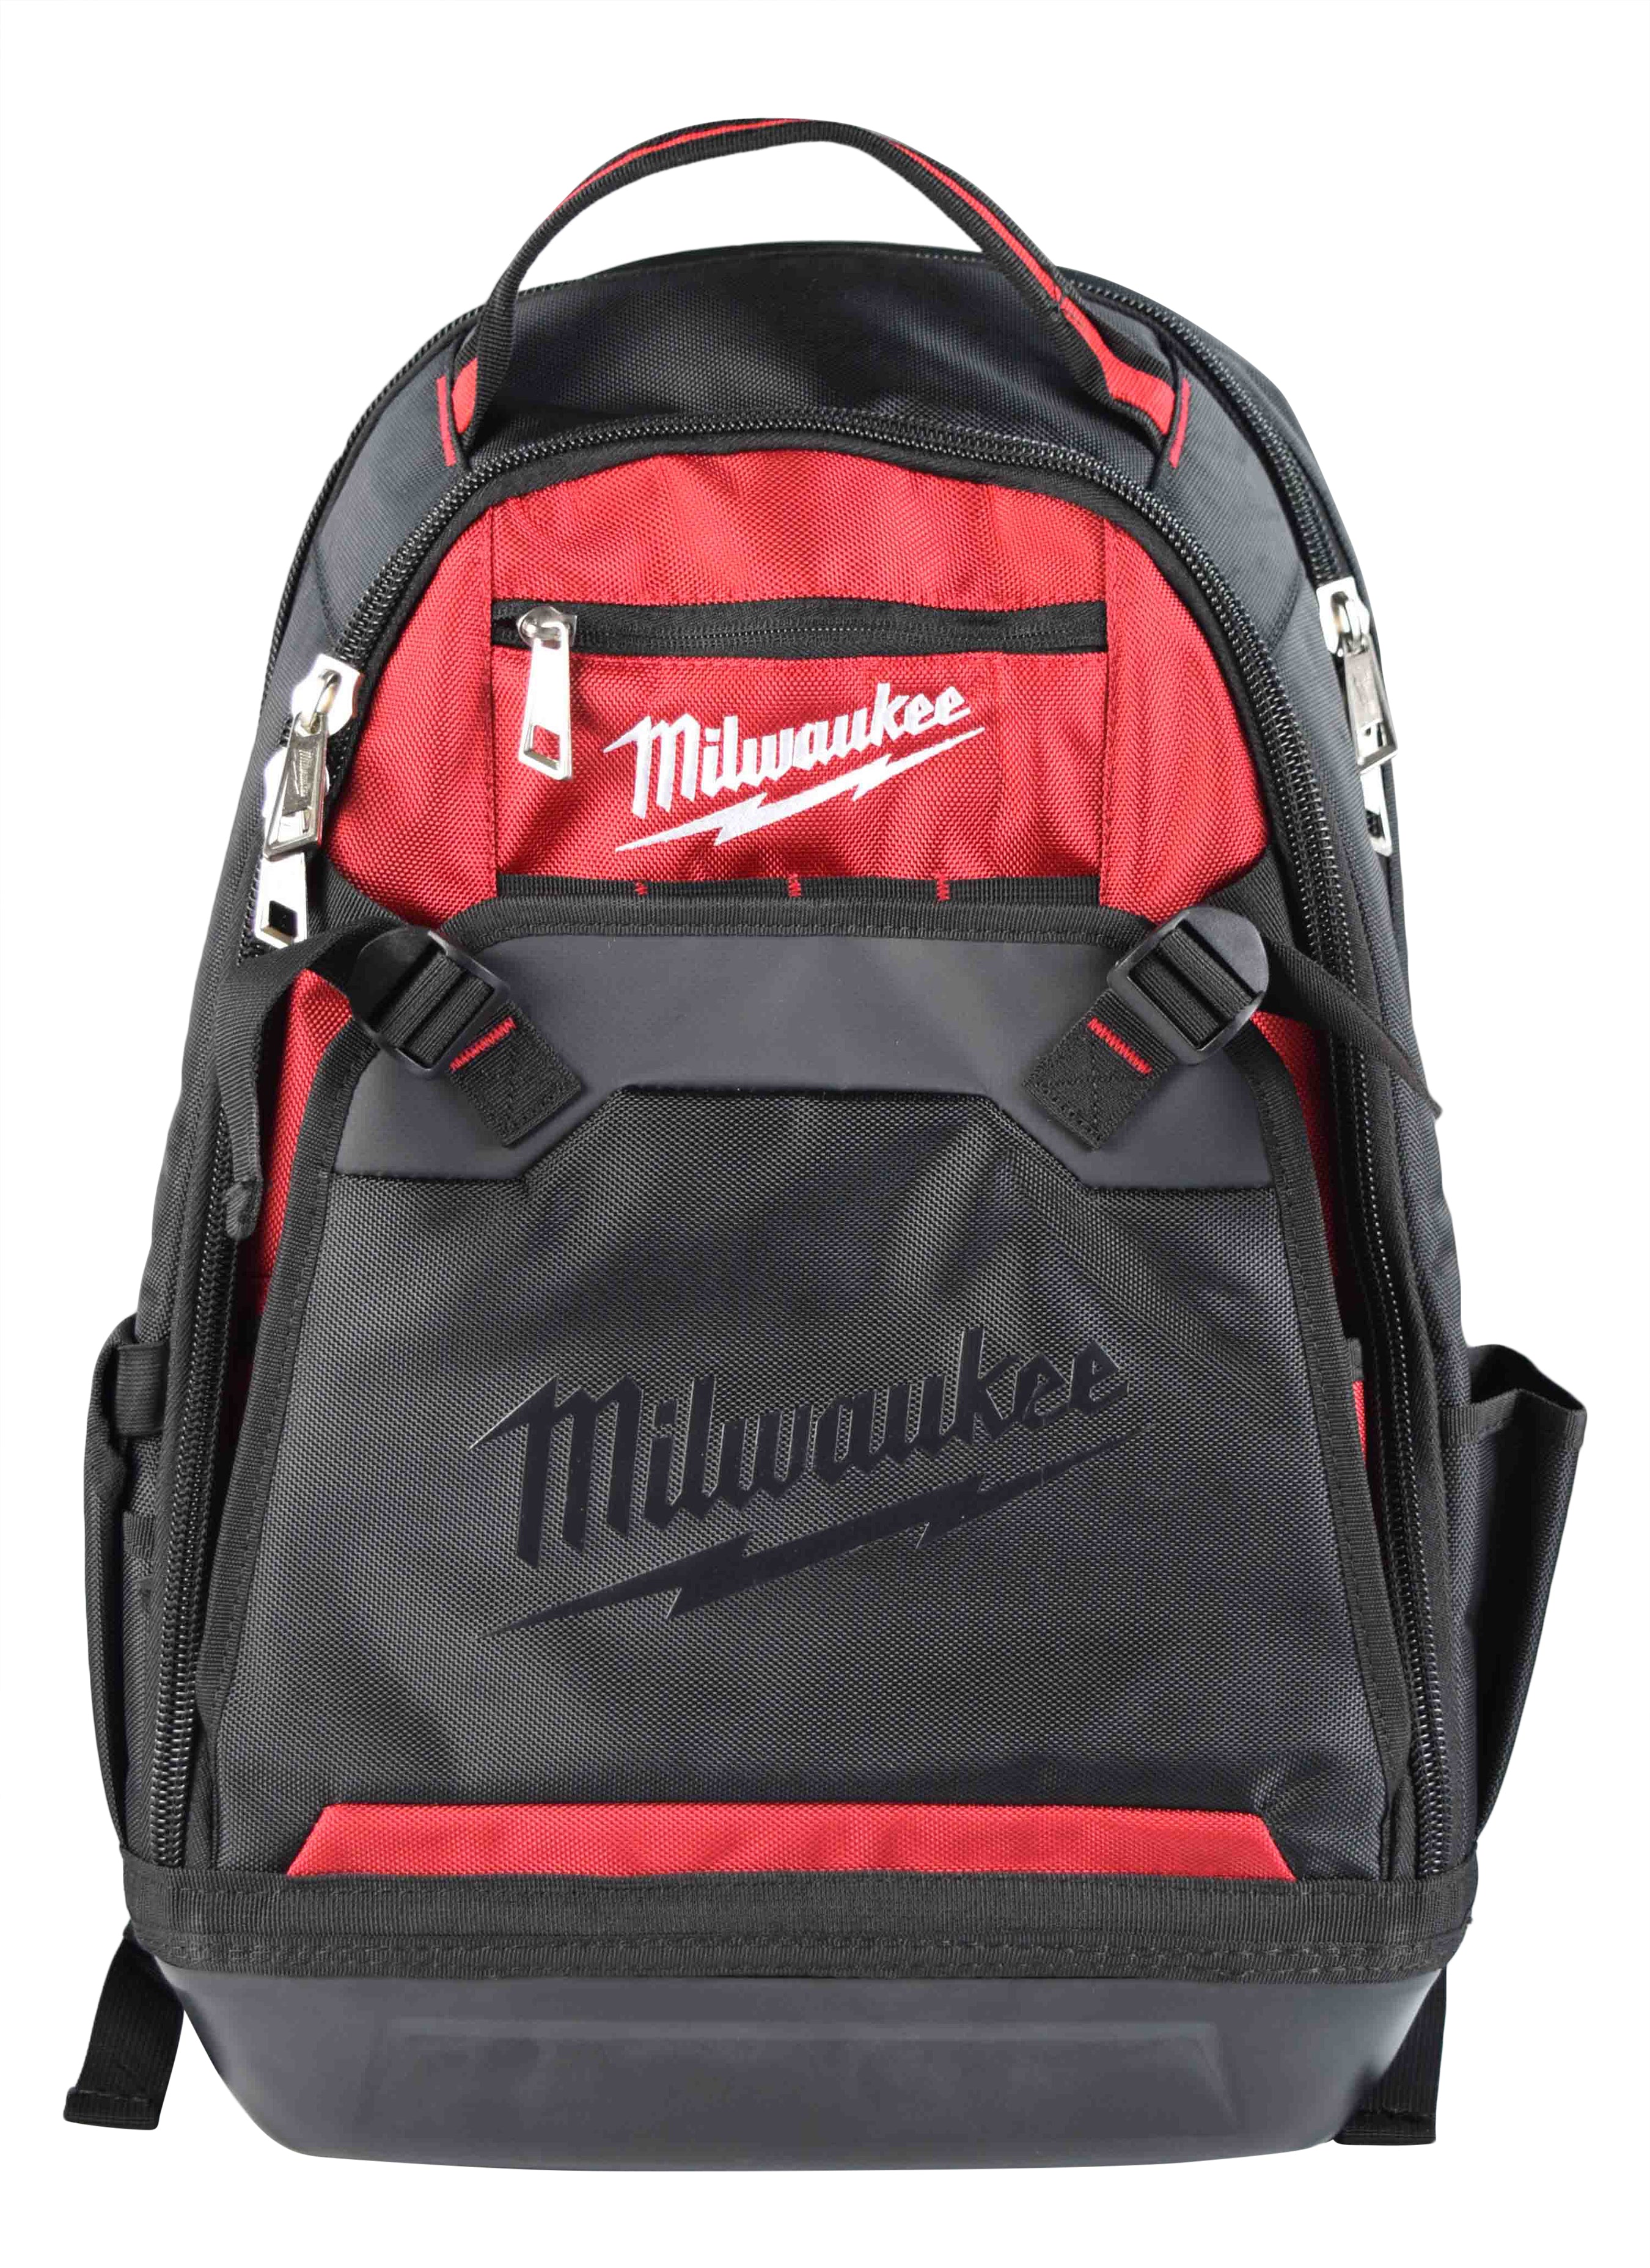 Milwaukee 48-22-8200 Jobsite Backpack